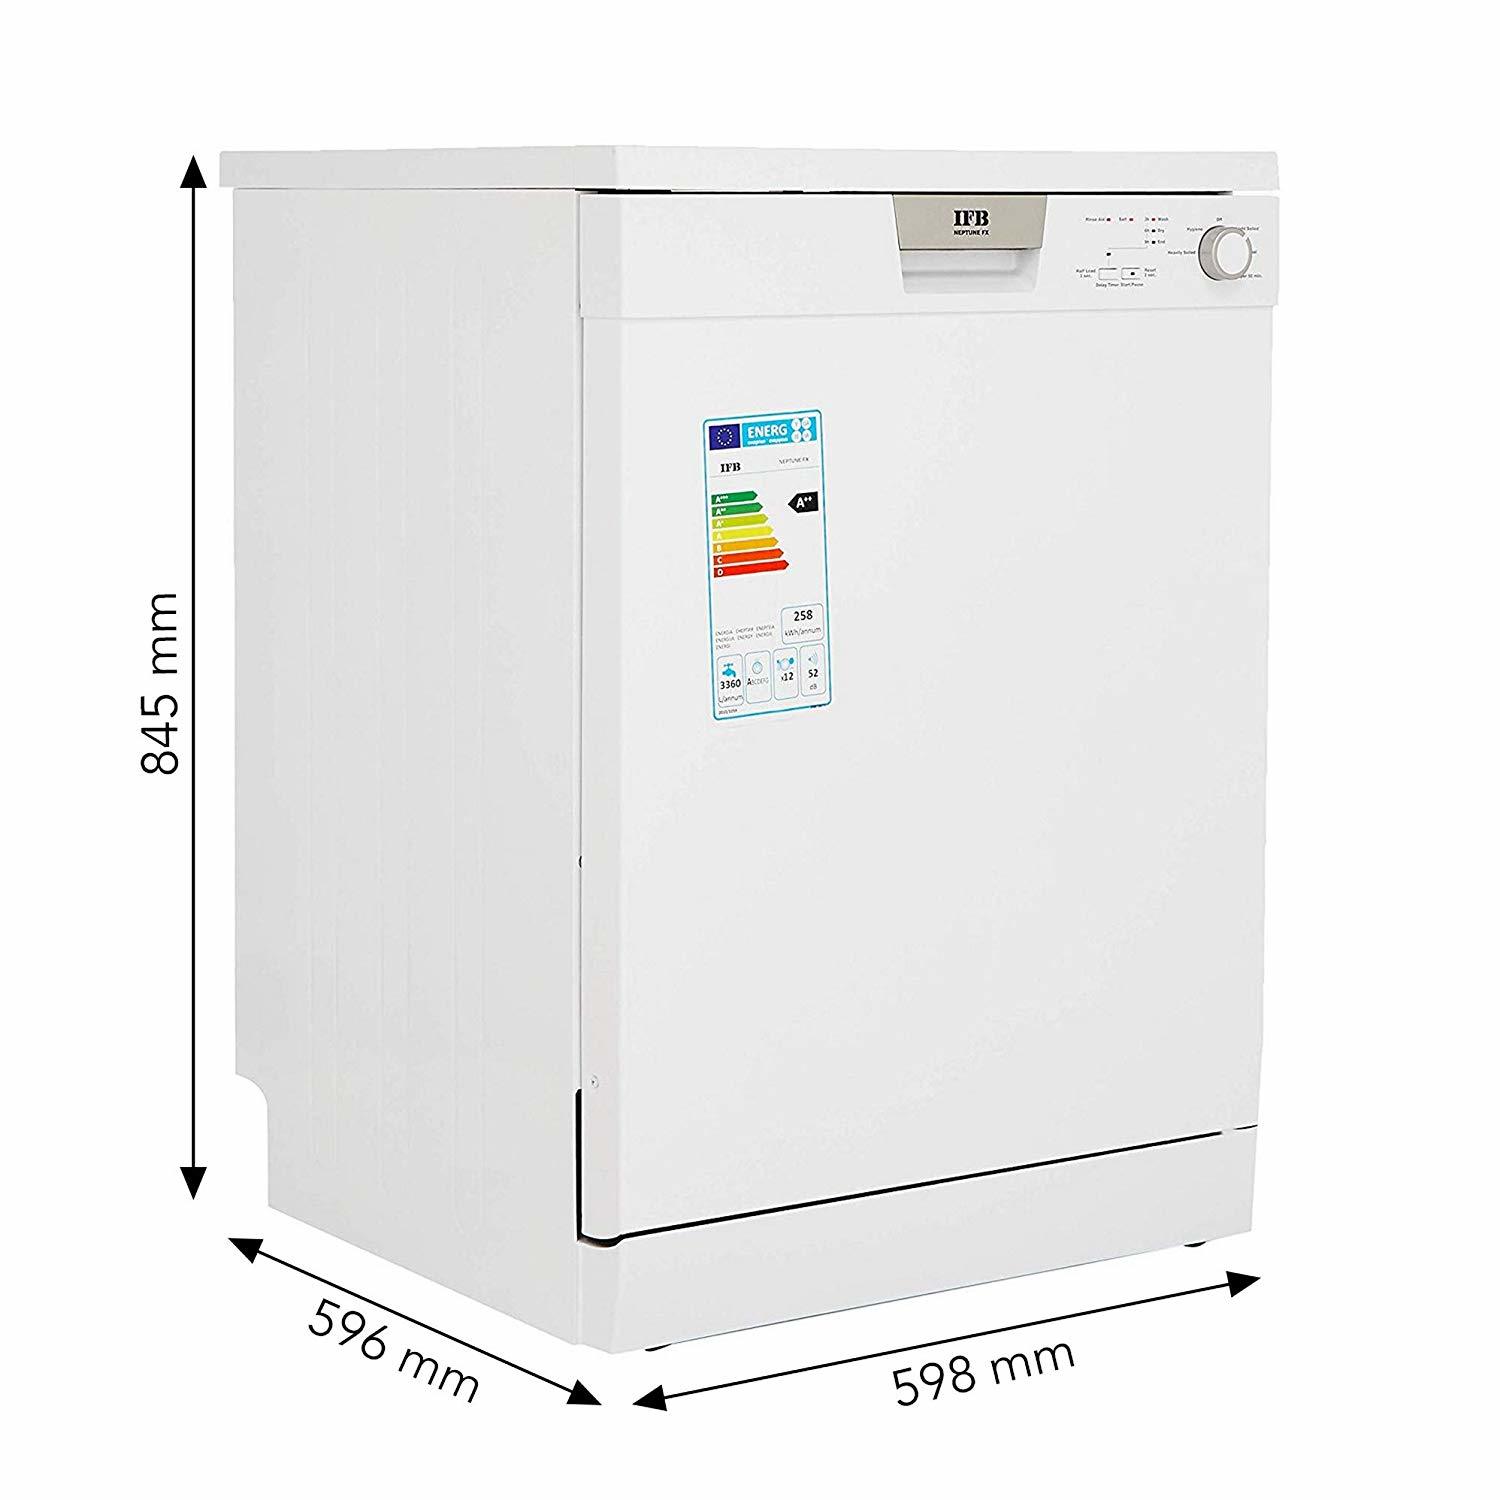 IFB Neptune FX Fully Electronic Dishwasher (12 Place Settings, White)